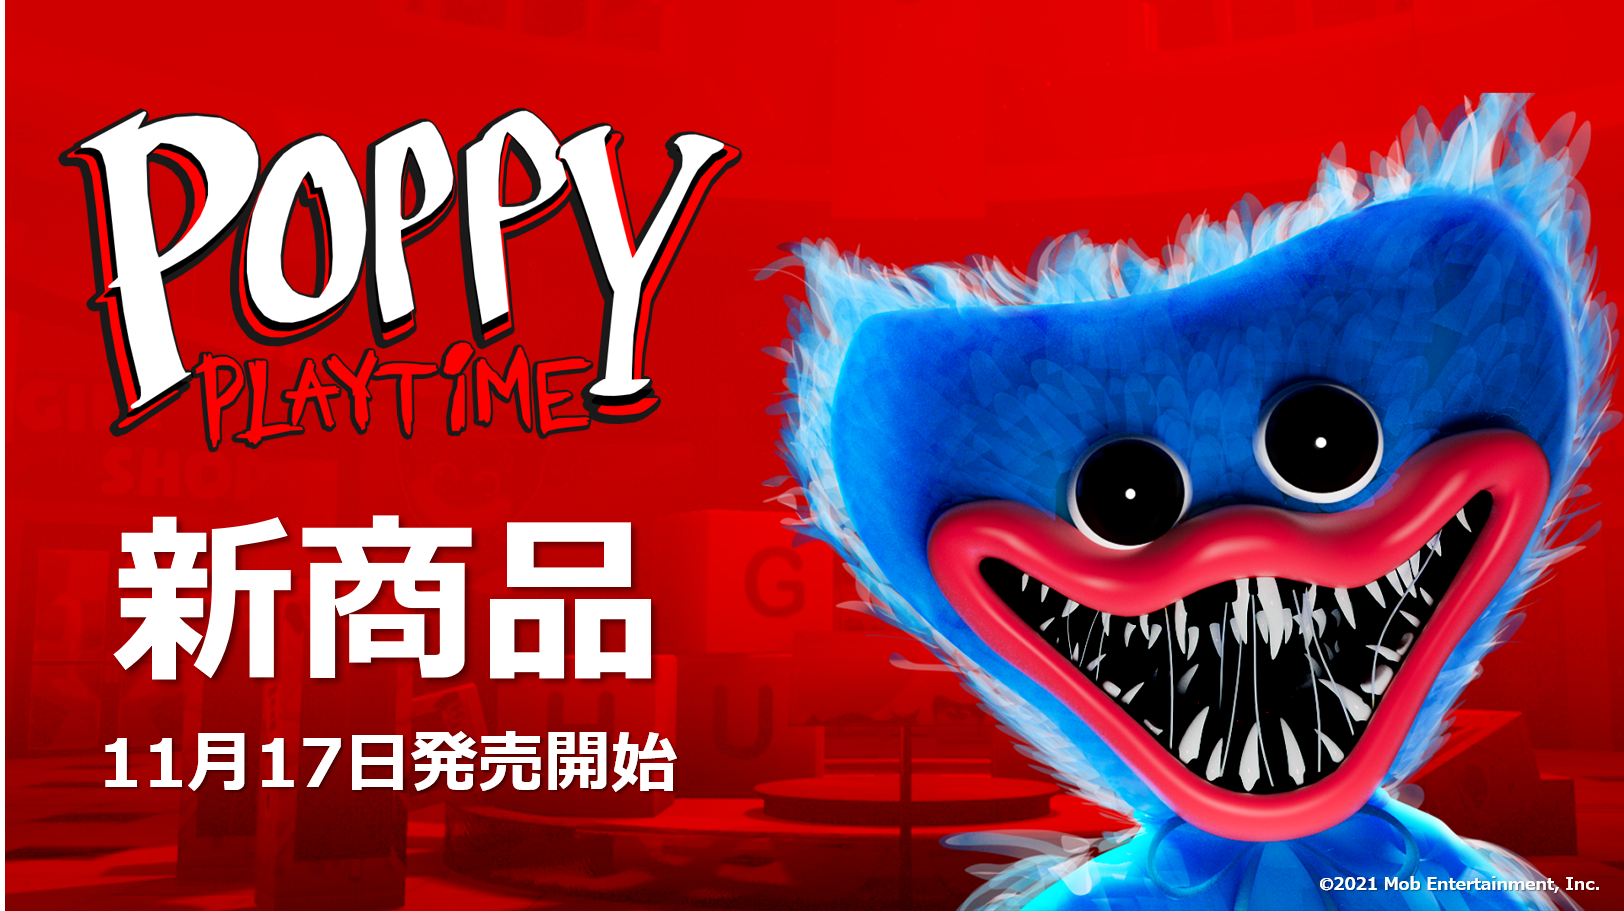 ホラーゲーム『Poppy Playtime』の
キャラクター「ハギーワギー」、
日本初上陸の公式グッズが11月17日(木)販売開始！